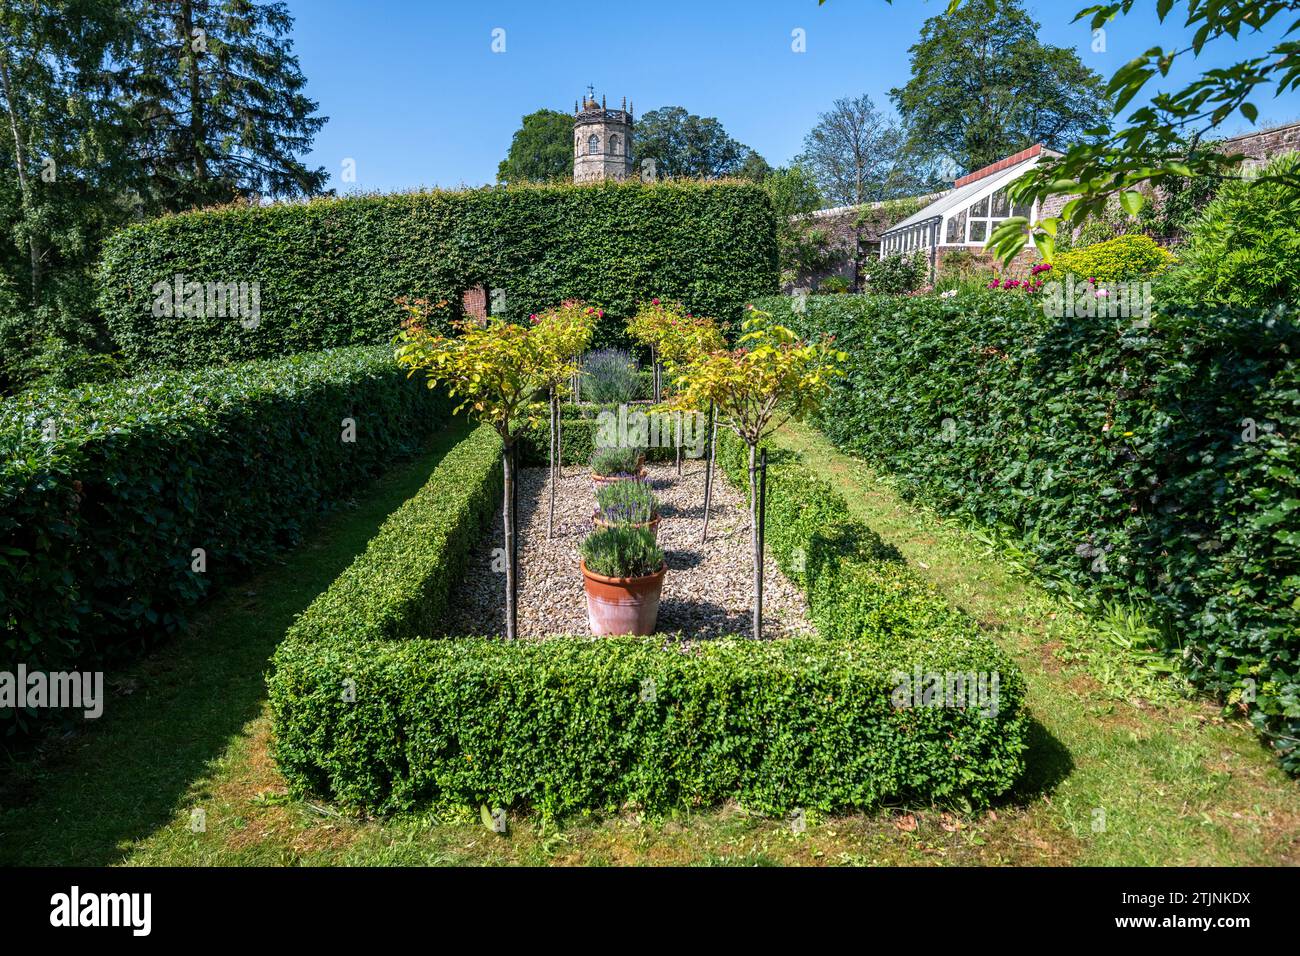 Garden in Richmond England Stock Photo